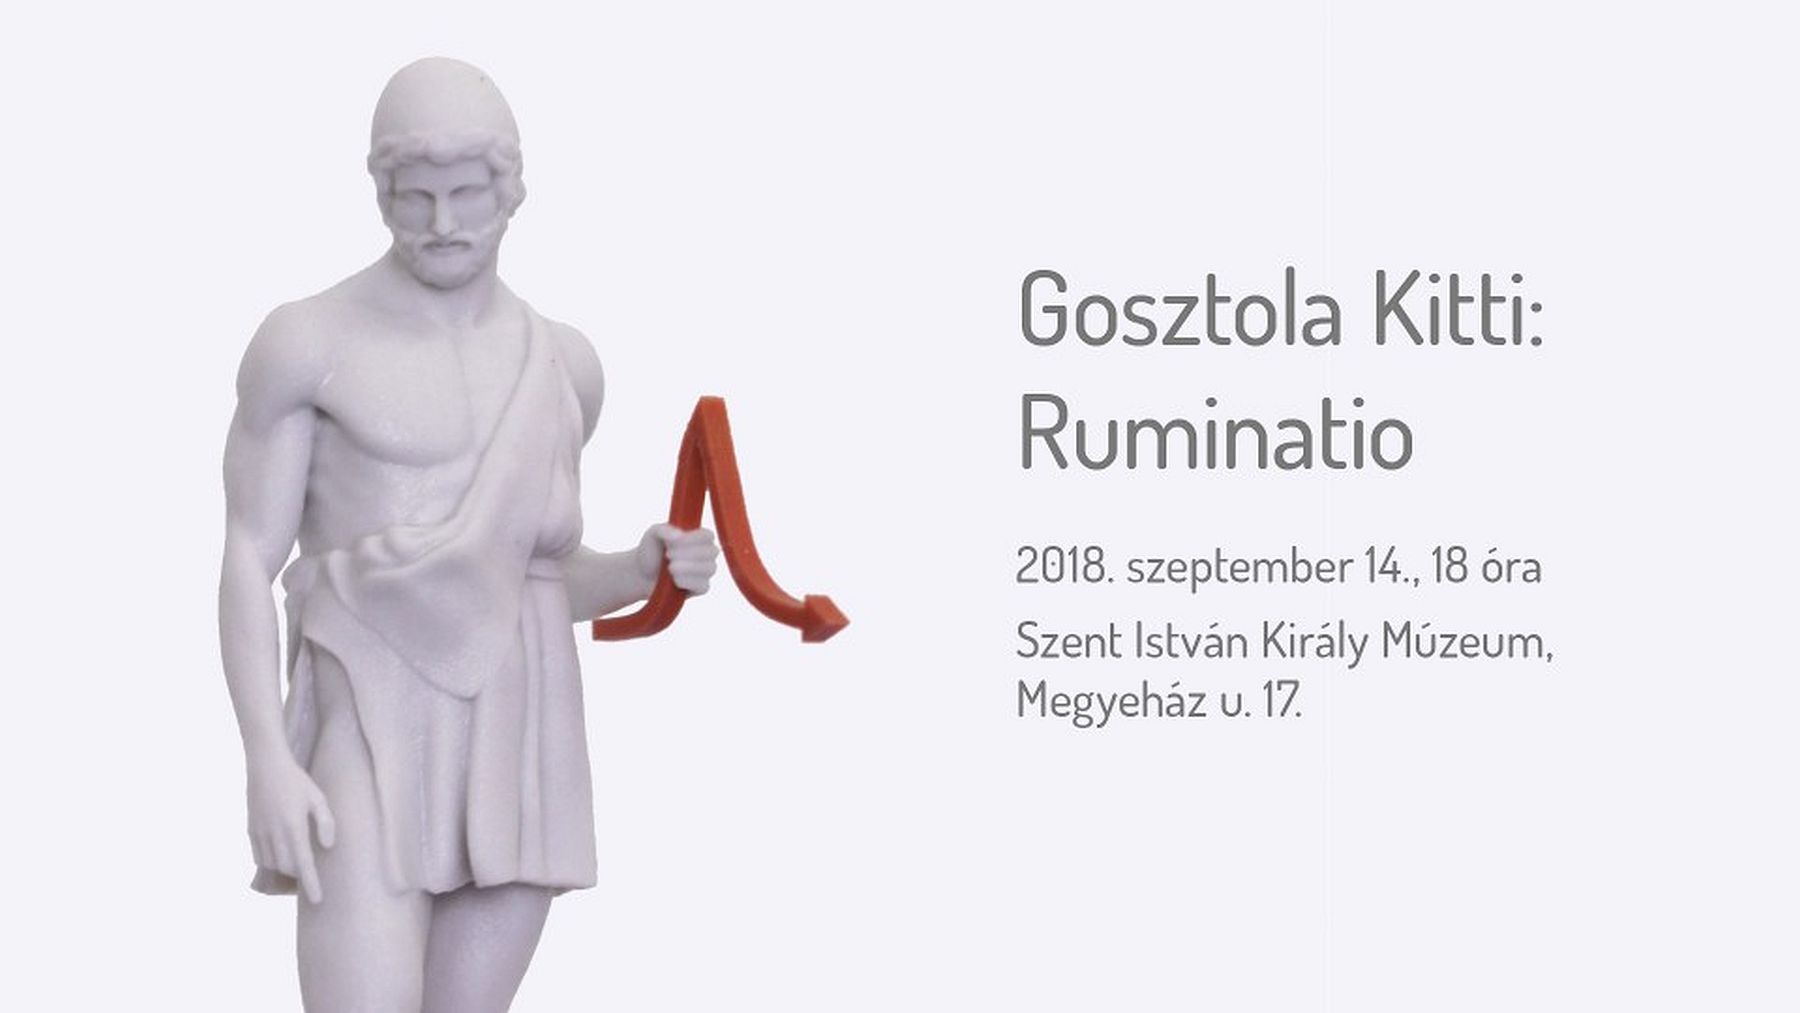 Ruminatio - Gosztola Kitti, képzőművész kiállításának megnyitója